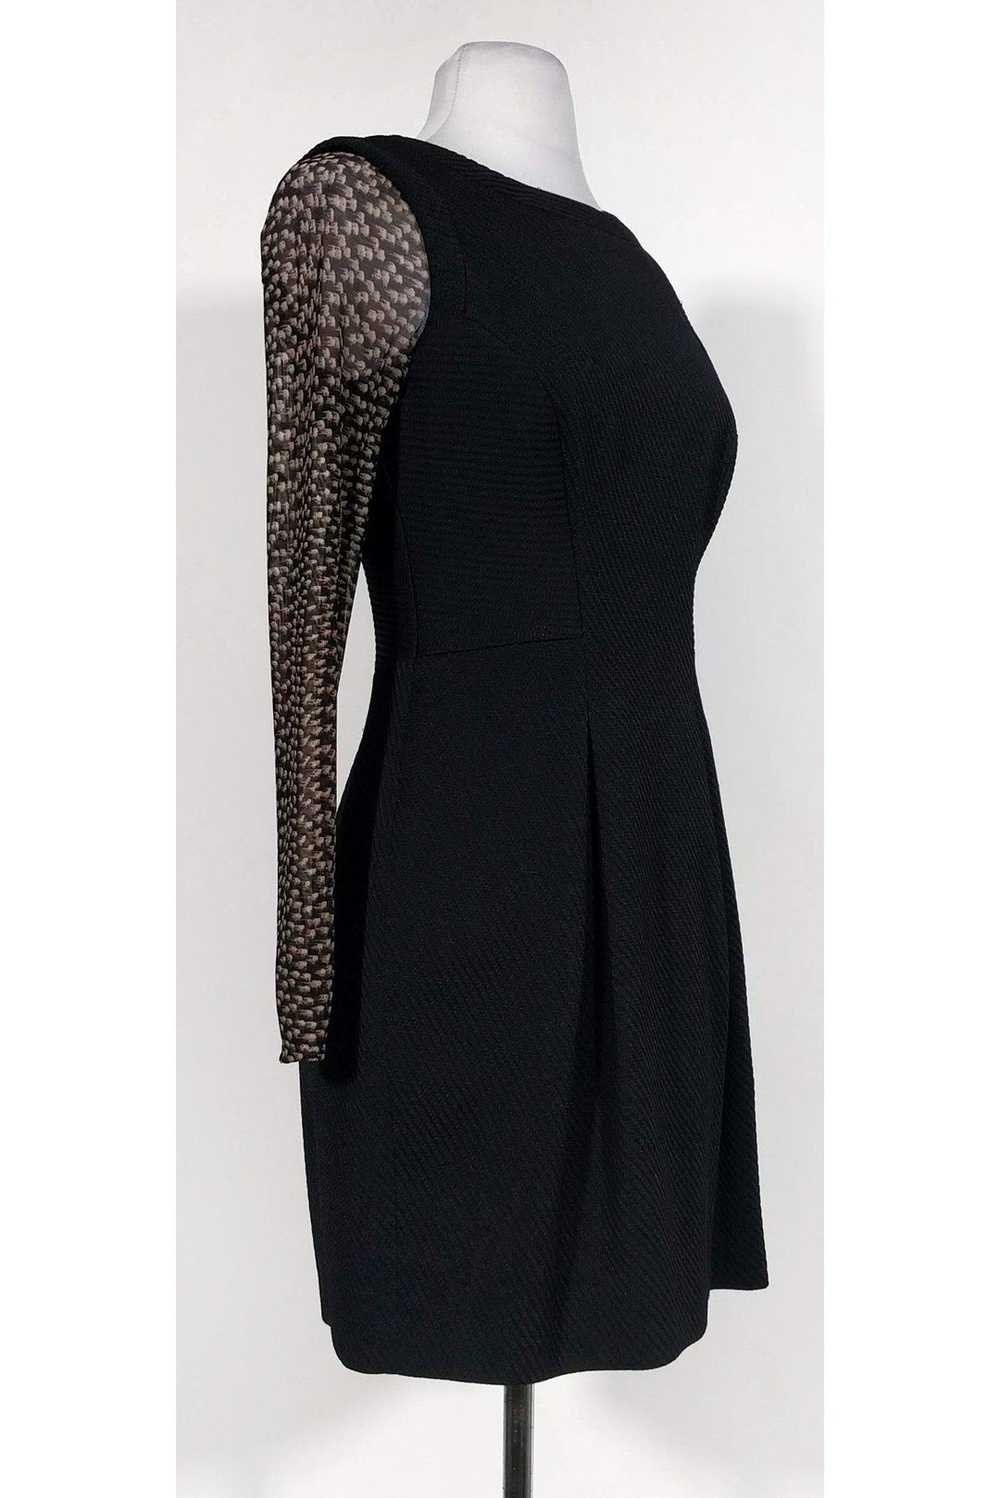 Karen Millen - Black Textured Pattern Sleeve Dres… - image 2